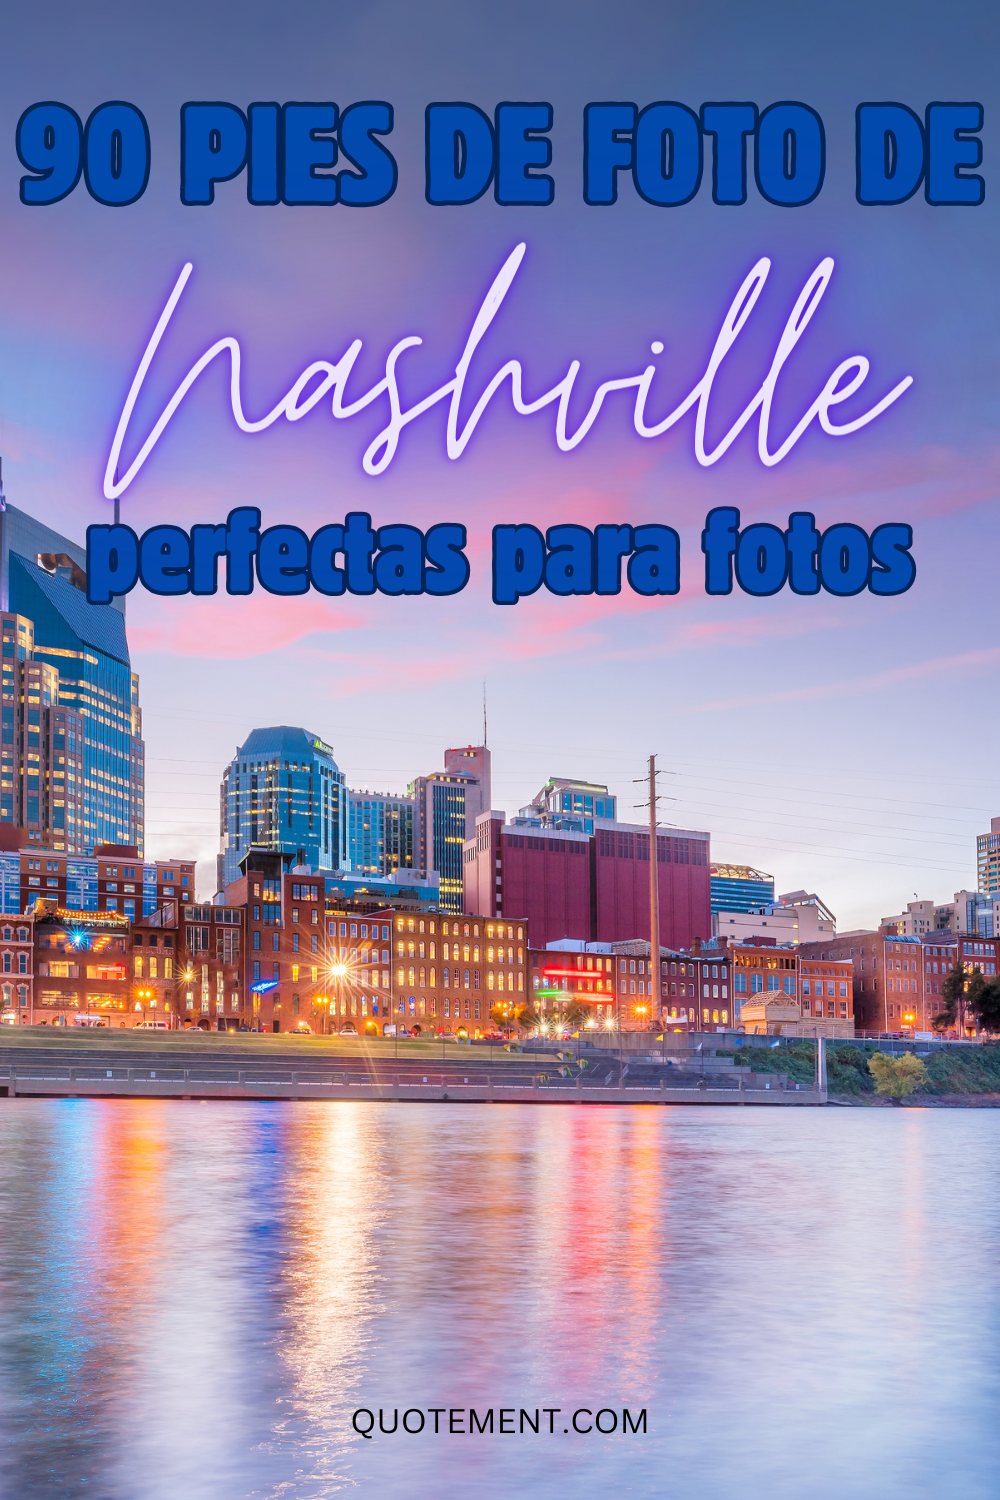 90 imágenes de Nashville que captan la belleza de la ciudad de la música